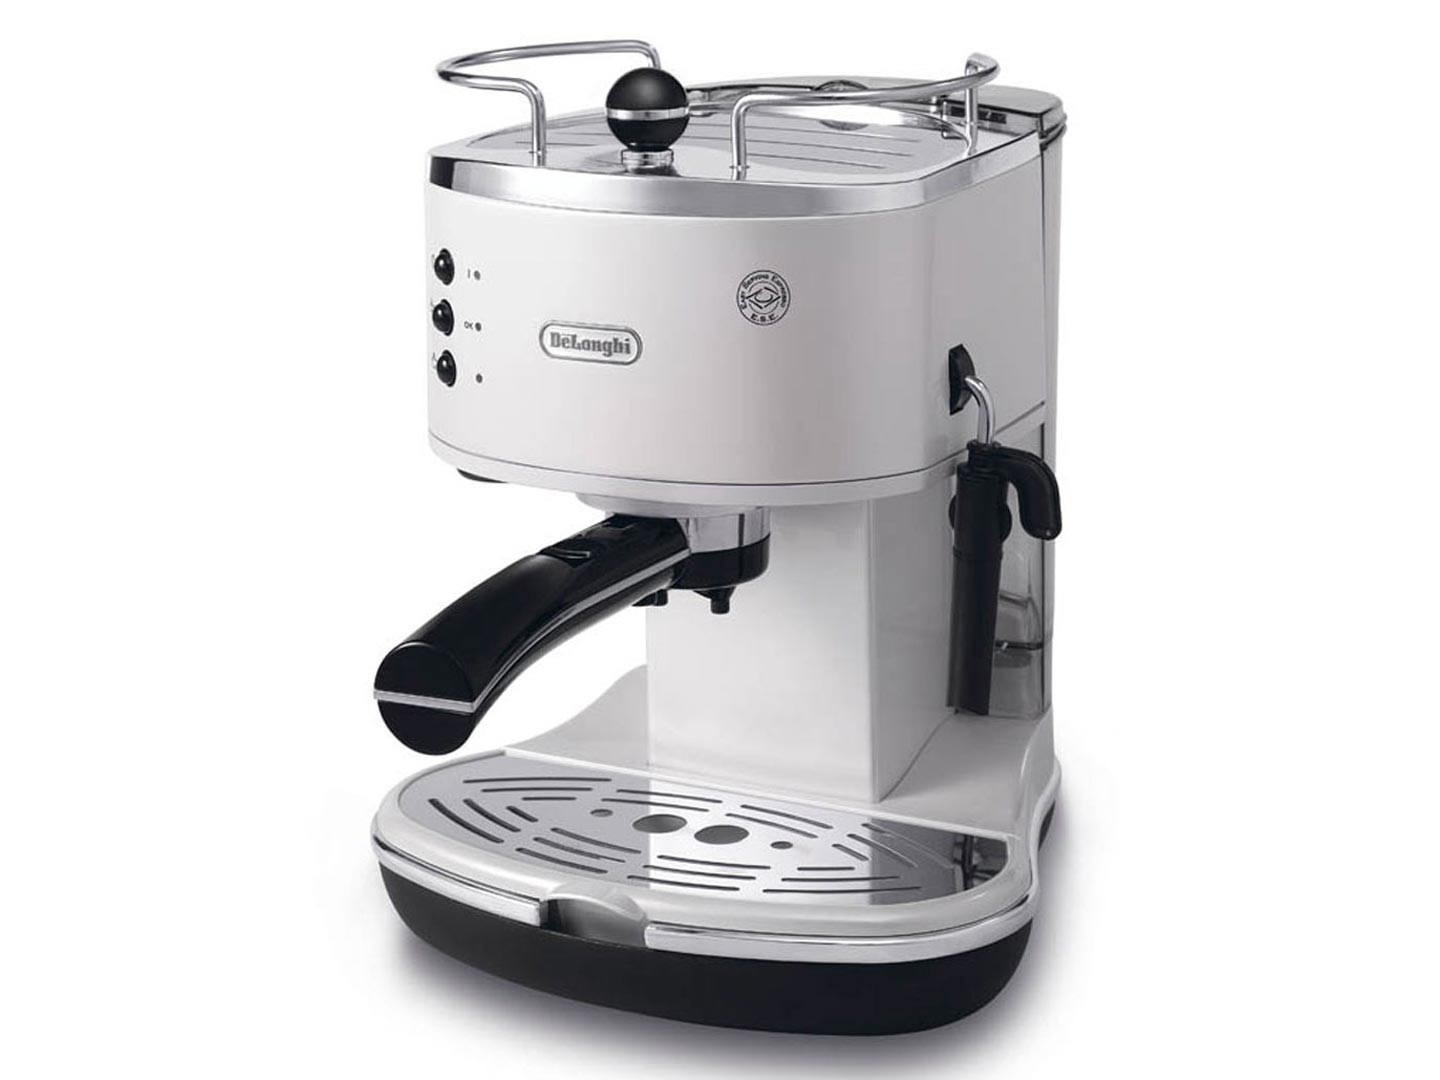 DeLonghi ECO 311.W Manuale Macchina per espresso 1,4 L, Macchine caffè in  Offerta su Stay On